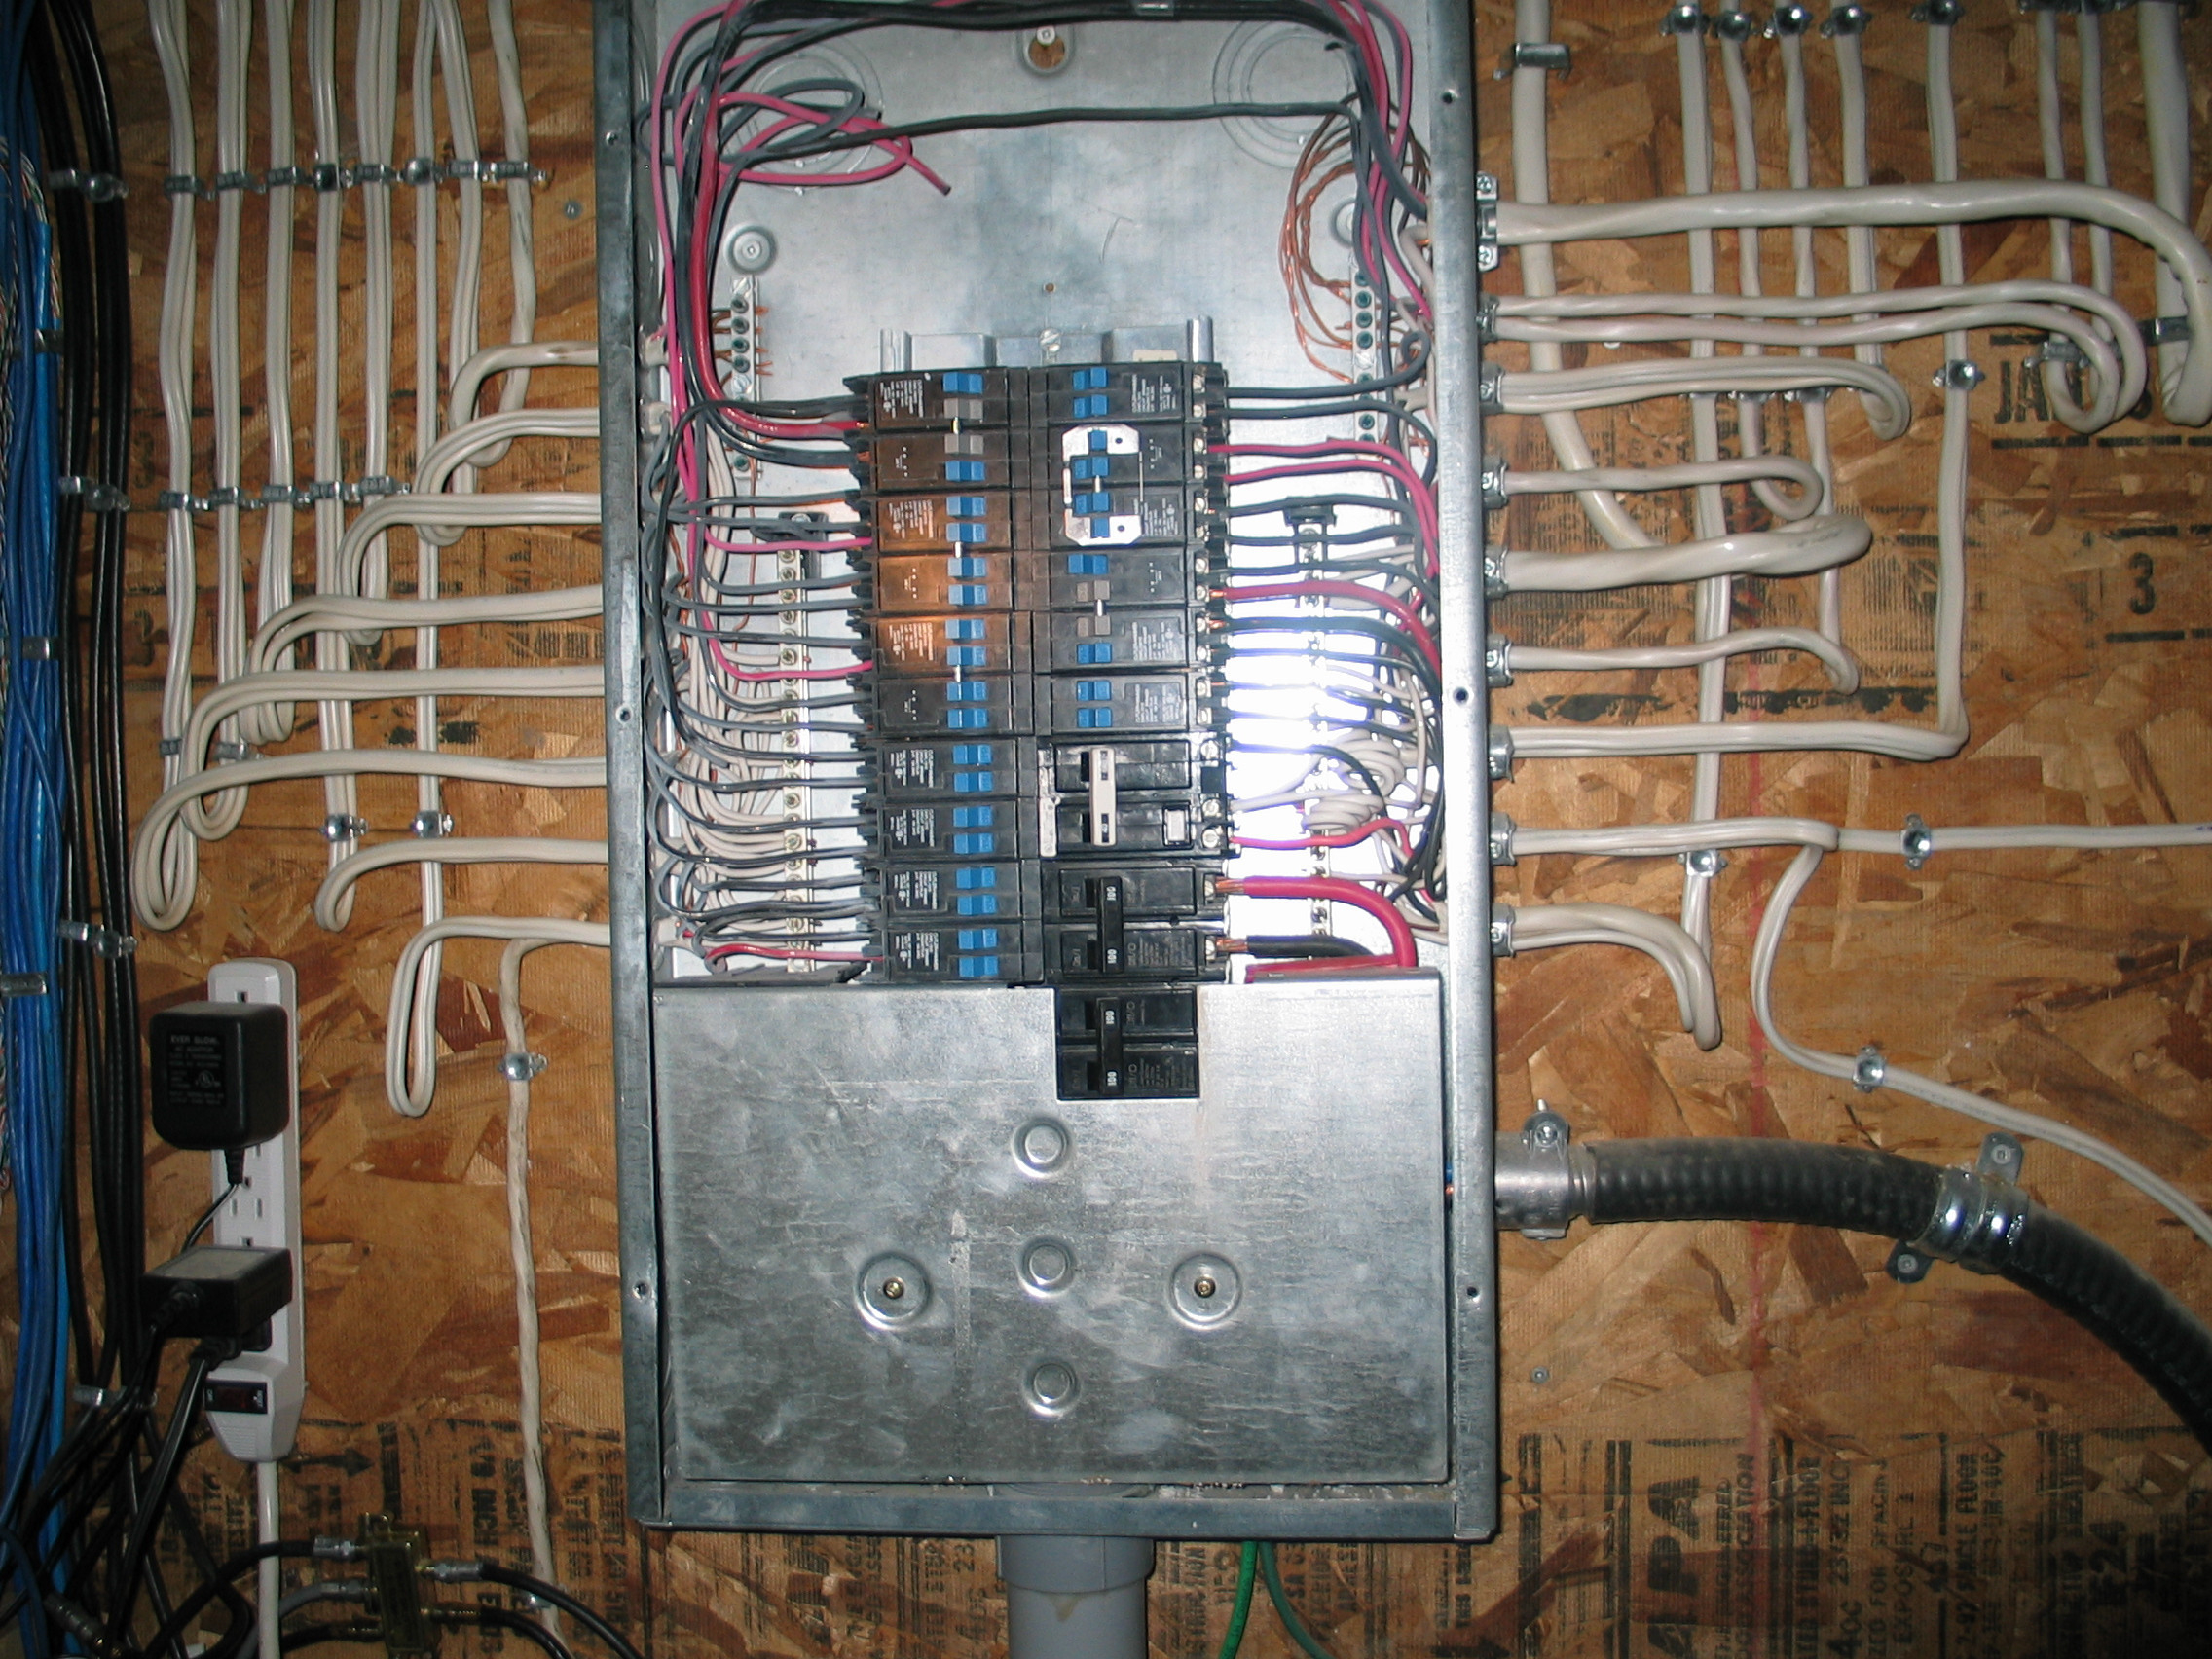 100 Amp Electrical Panel Wiring Diagram | Wiring Diagram - 100 Amp Electrical Panel Wiring Diagram